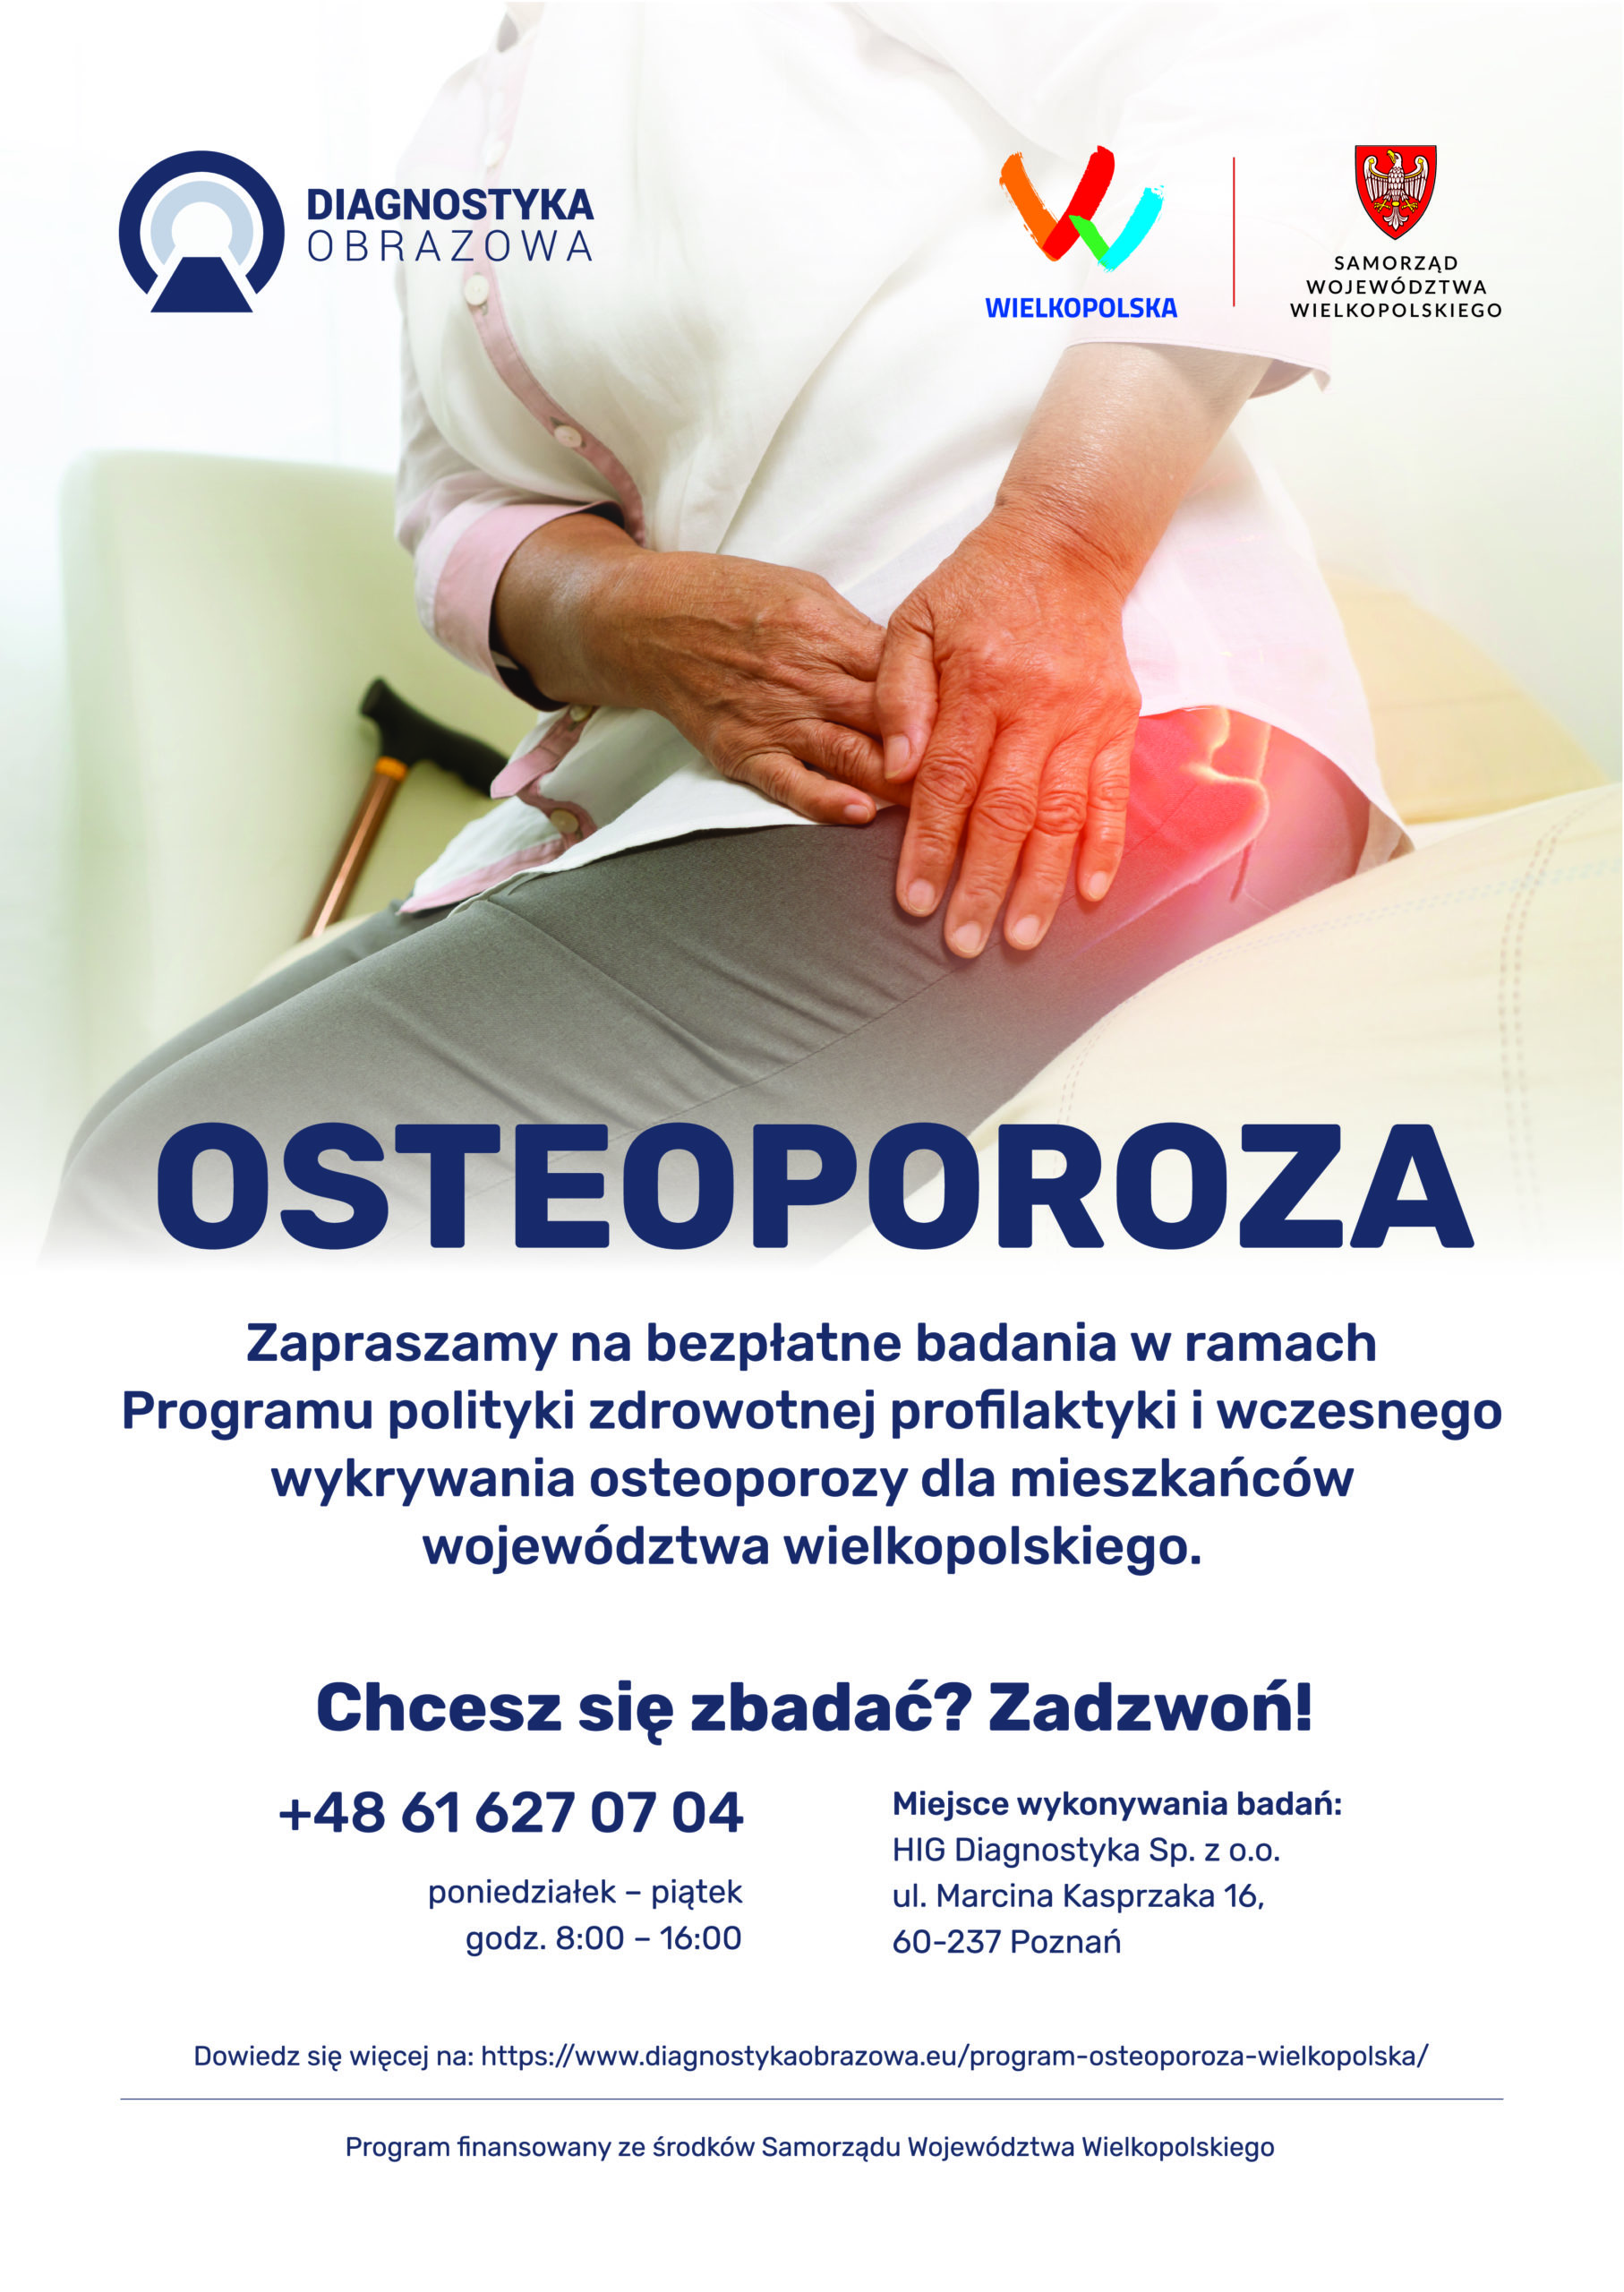 Program polityki zdrowotnej profilaktyki i wczesnego wykrywania osteoporozy dla mieszkańców województwa wielkopolskiego